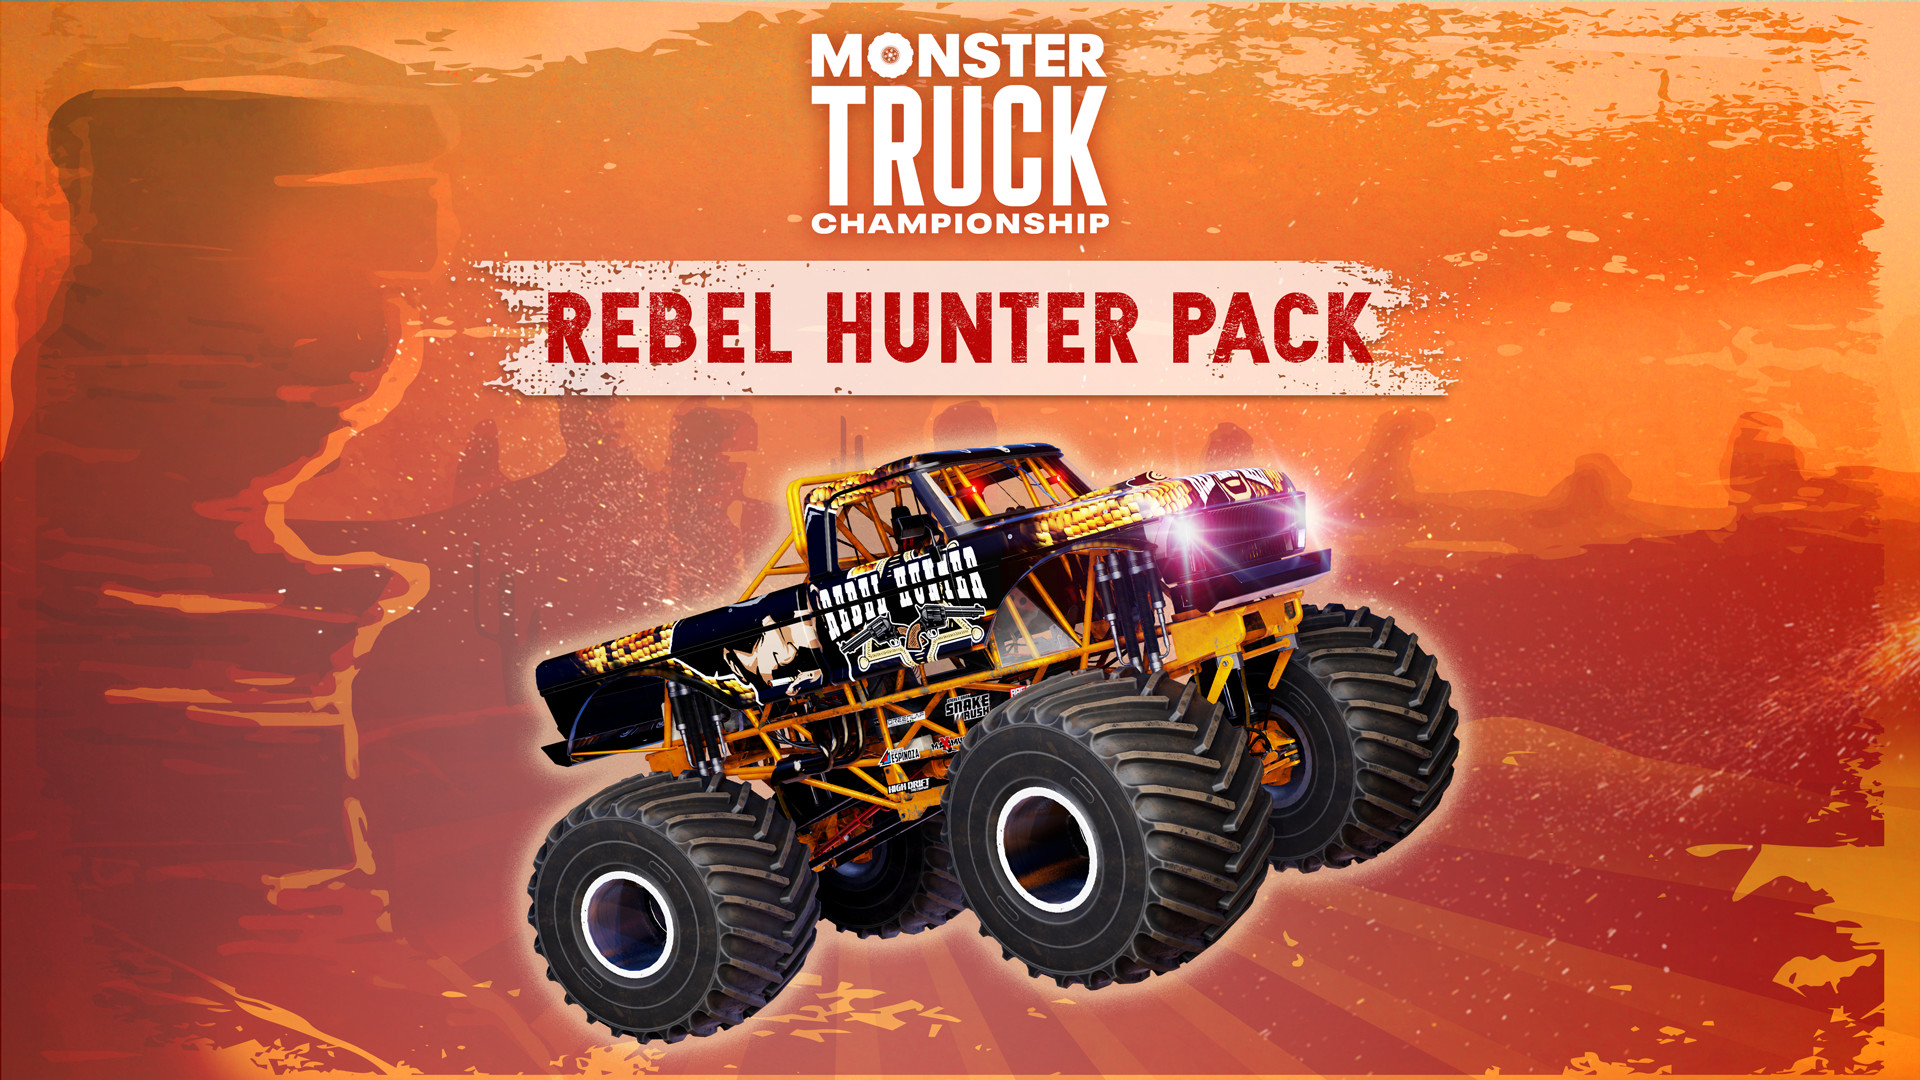 [$ 10.16] Monster Truck Championship - Rebel Hunter Pack DLC Steam CD Key